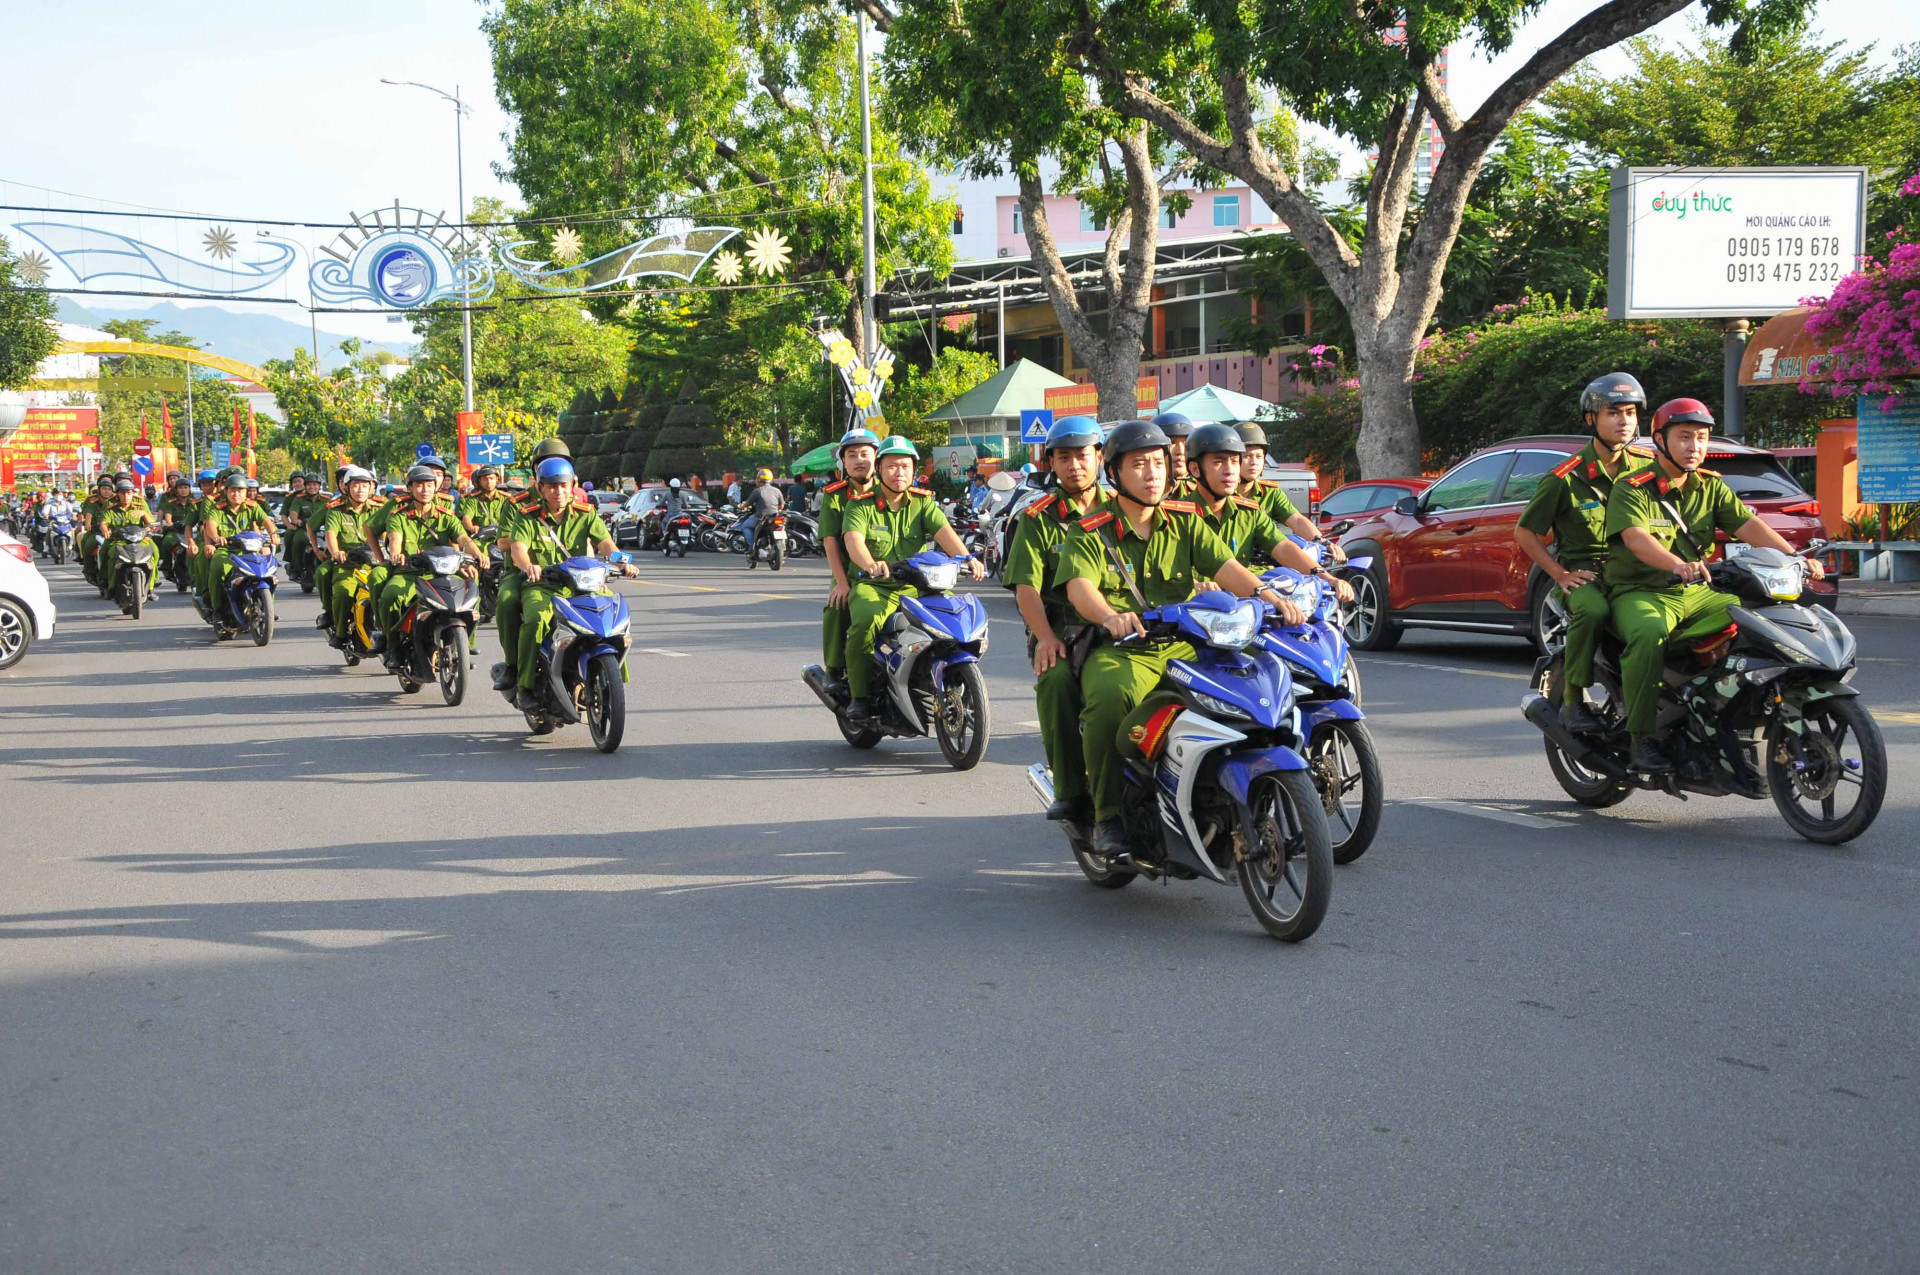 Sau lễ ra quân, các đoàn viên, thanh niên tham gia truyền thông về chiến dịch trên các tuyến đường chính của thành phố